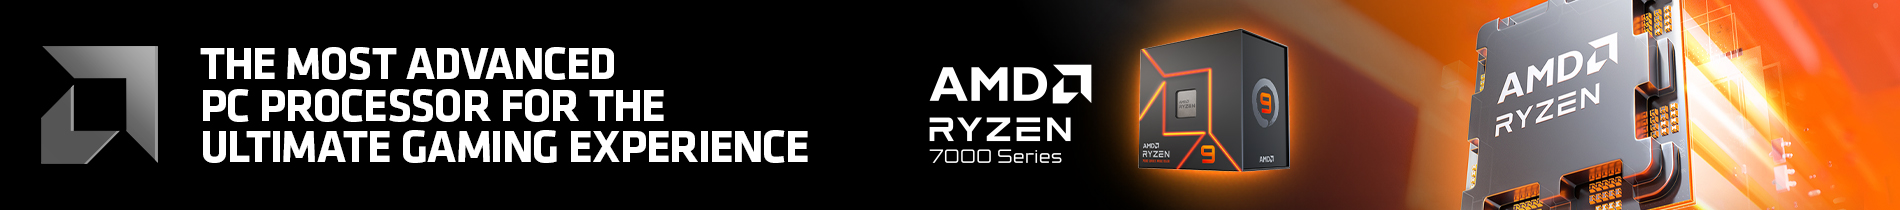 AMD Ryzen  Banners 09.22.btm Banner4